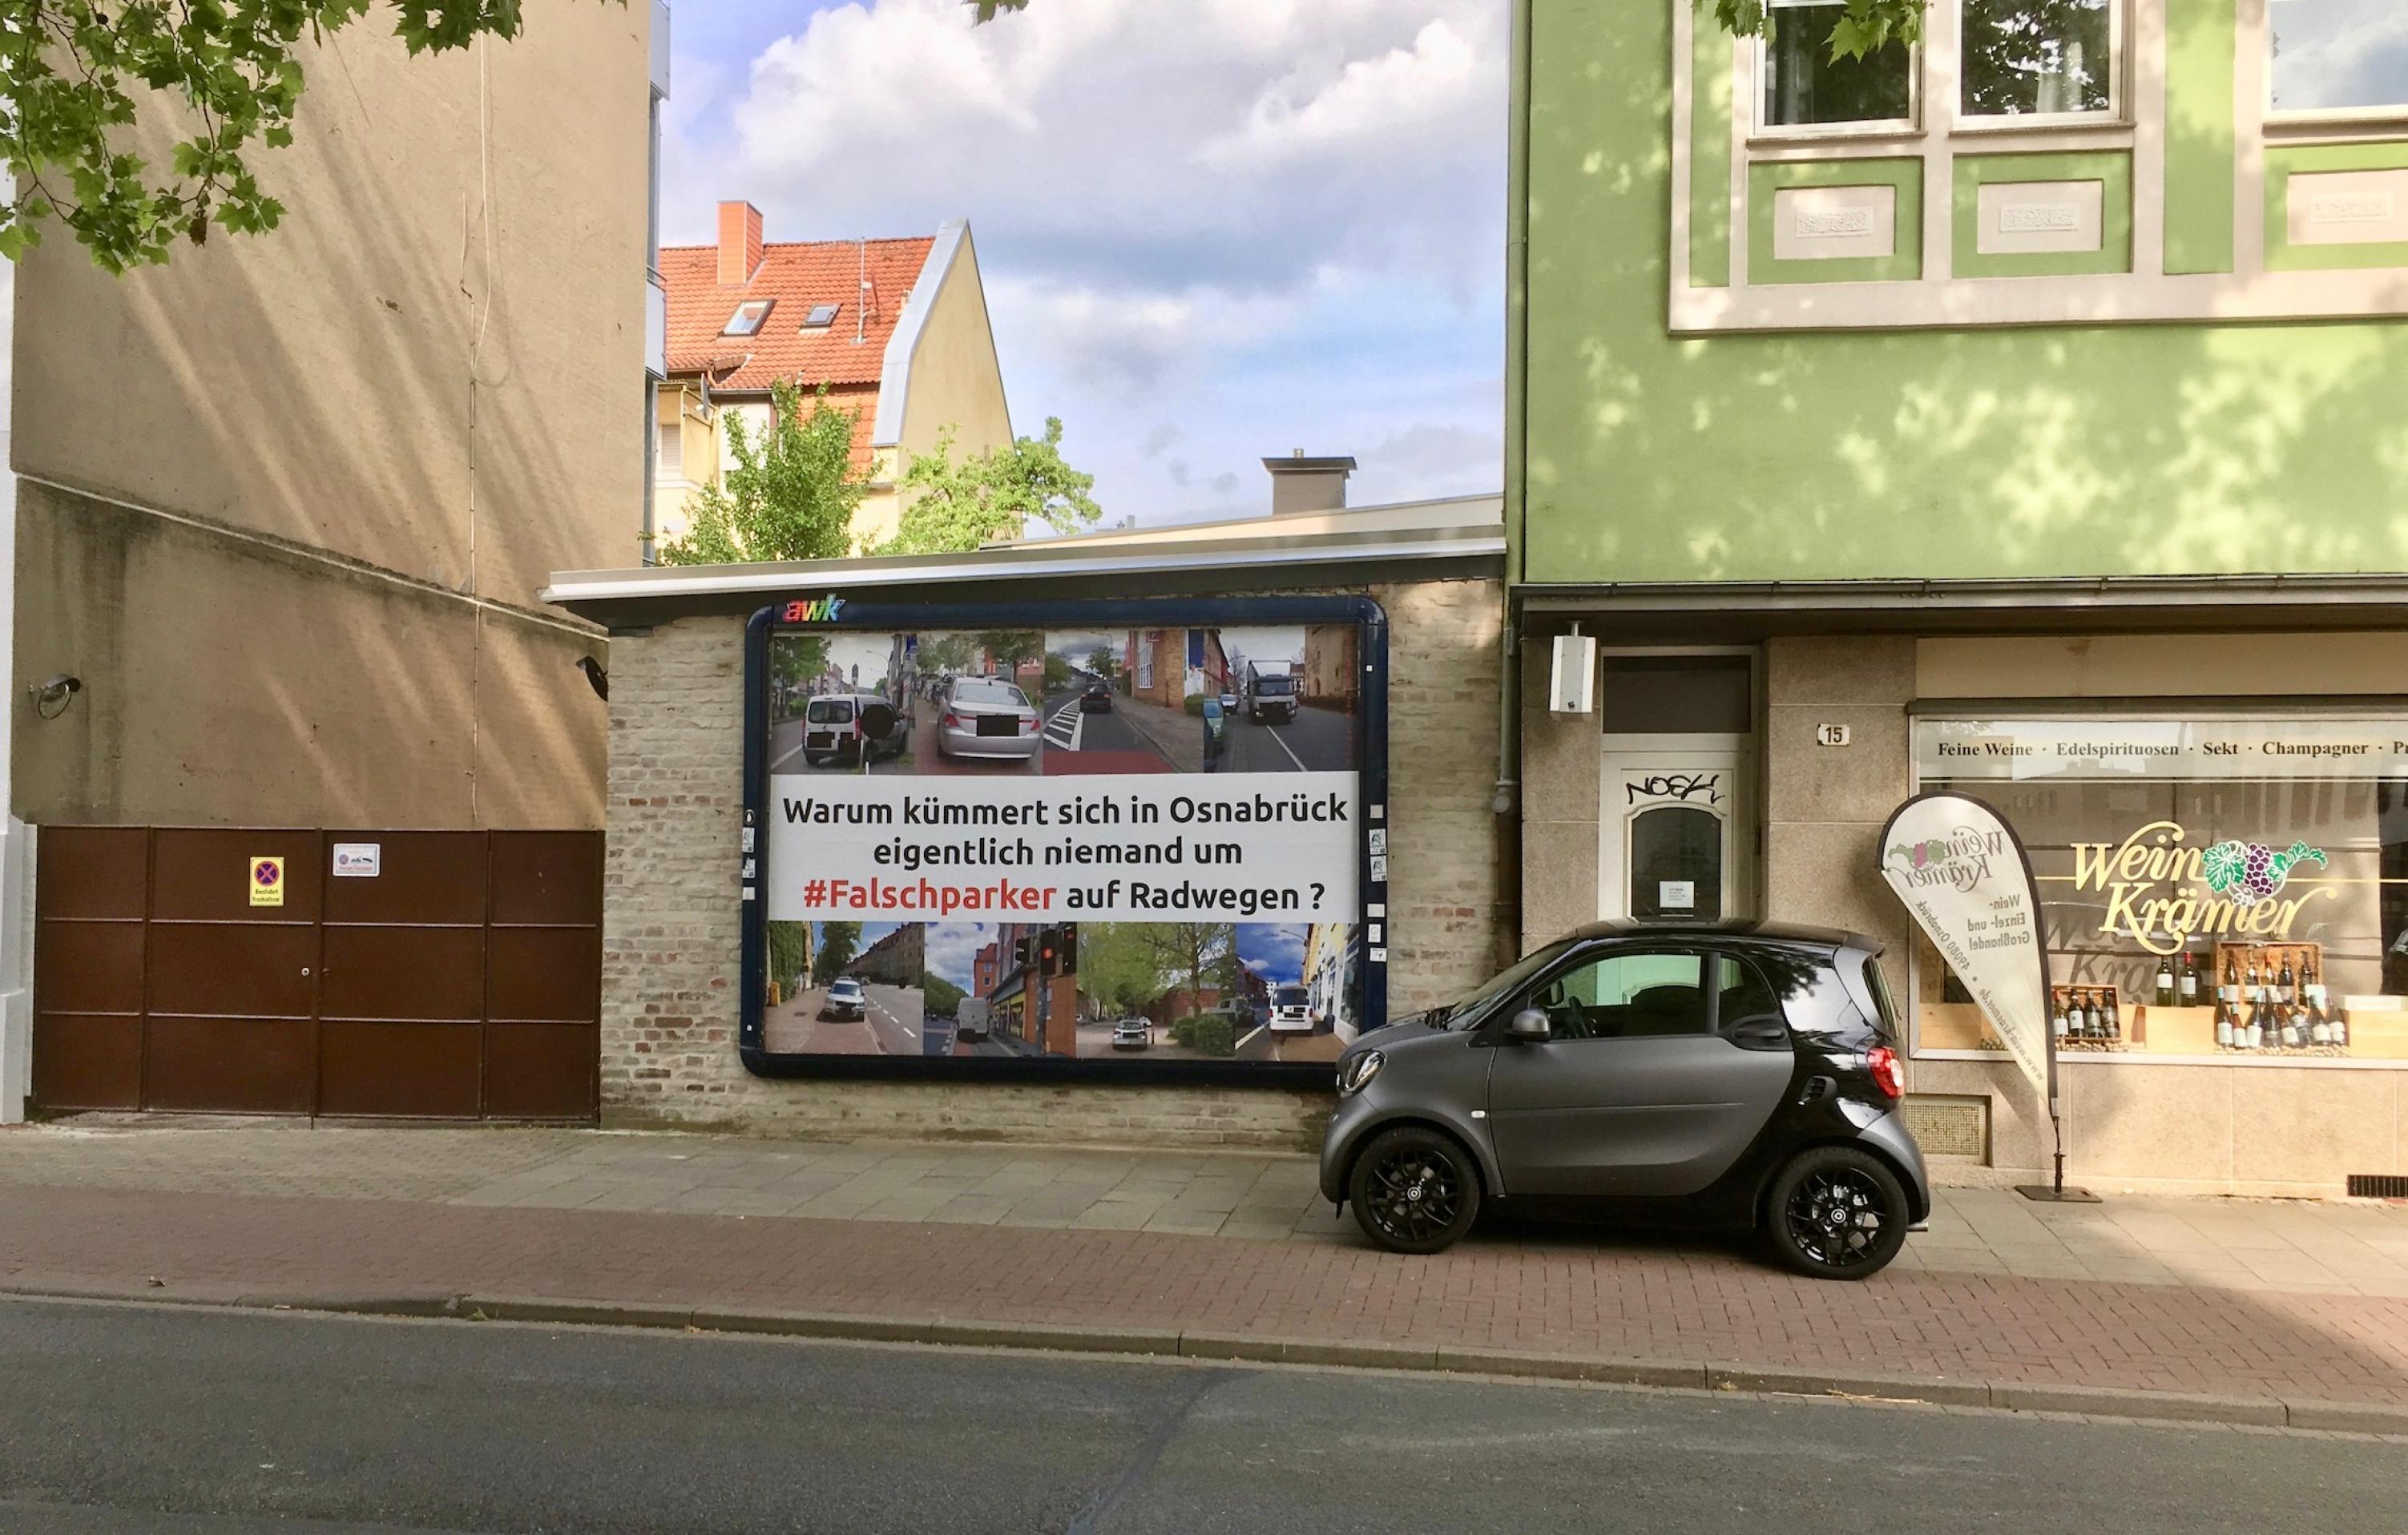 Ein grau-schwarzfarbener Smart steht auf den Gehweg neben einem Radweg. Er steht direkt neben einer Plakatwerbung die Falschparker mit der Aufschrift:" Warum kümmert sich in Osnabrück eigentlich niemand um #Falschparker auf Radwegen?"